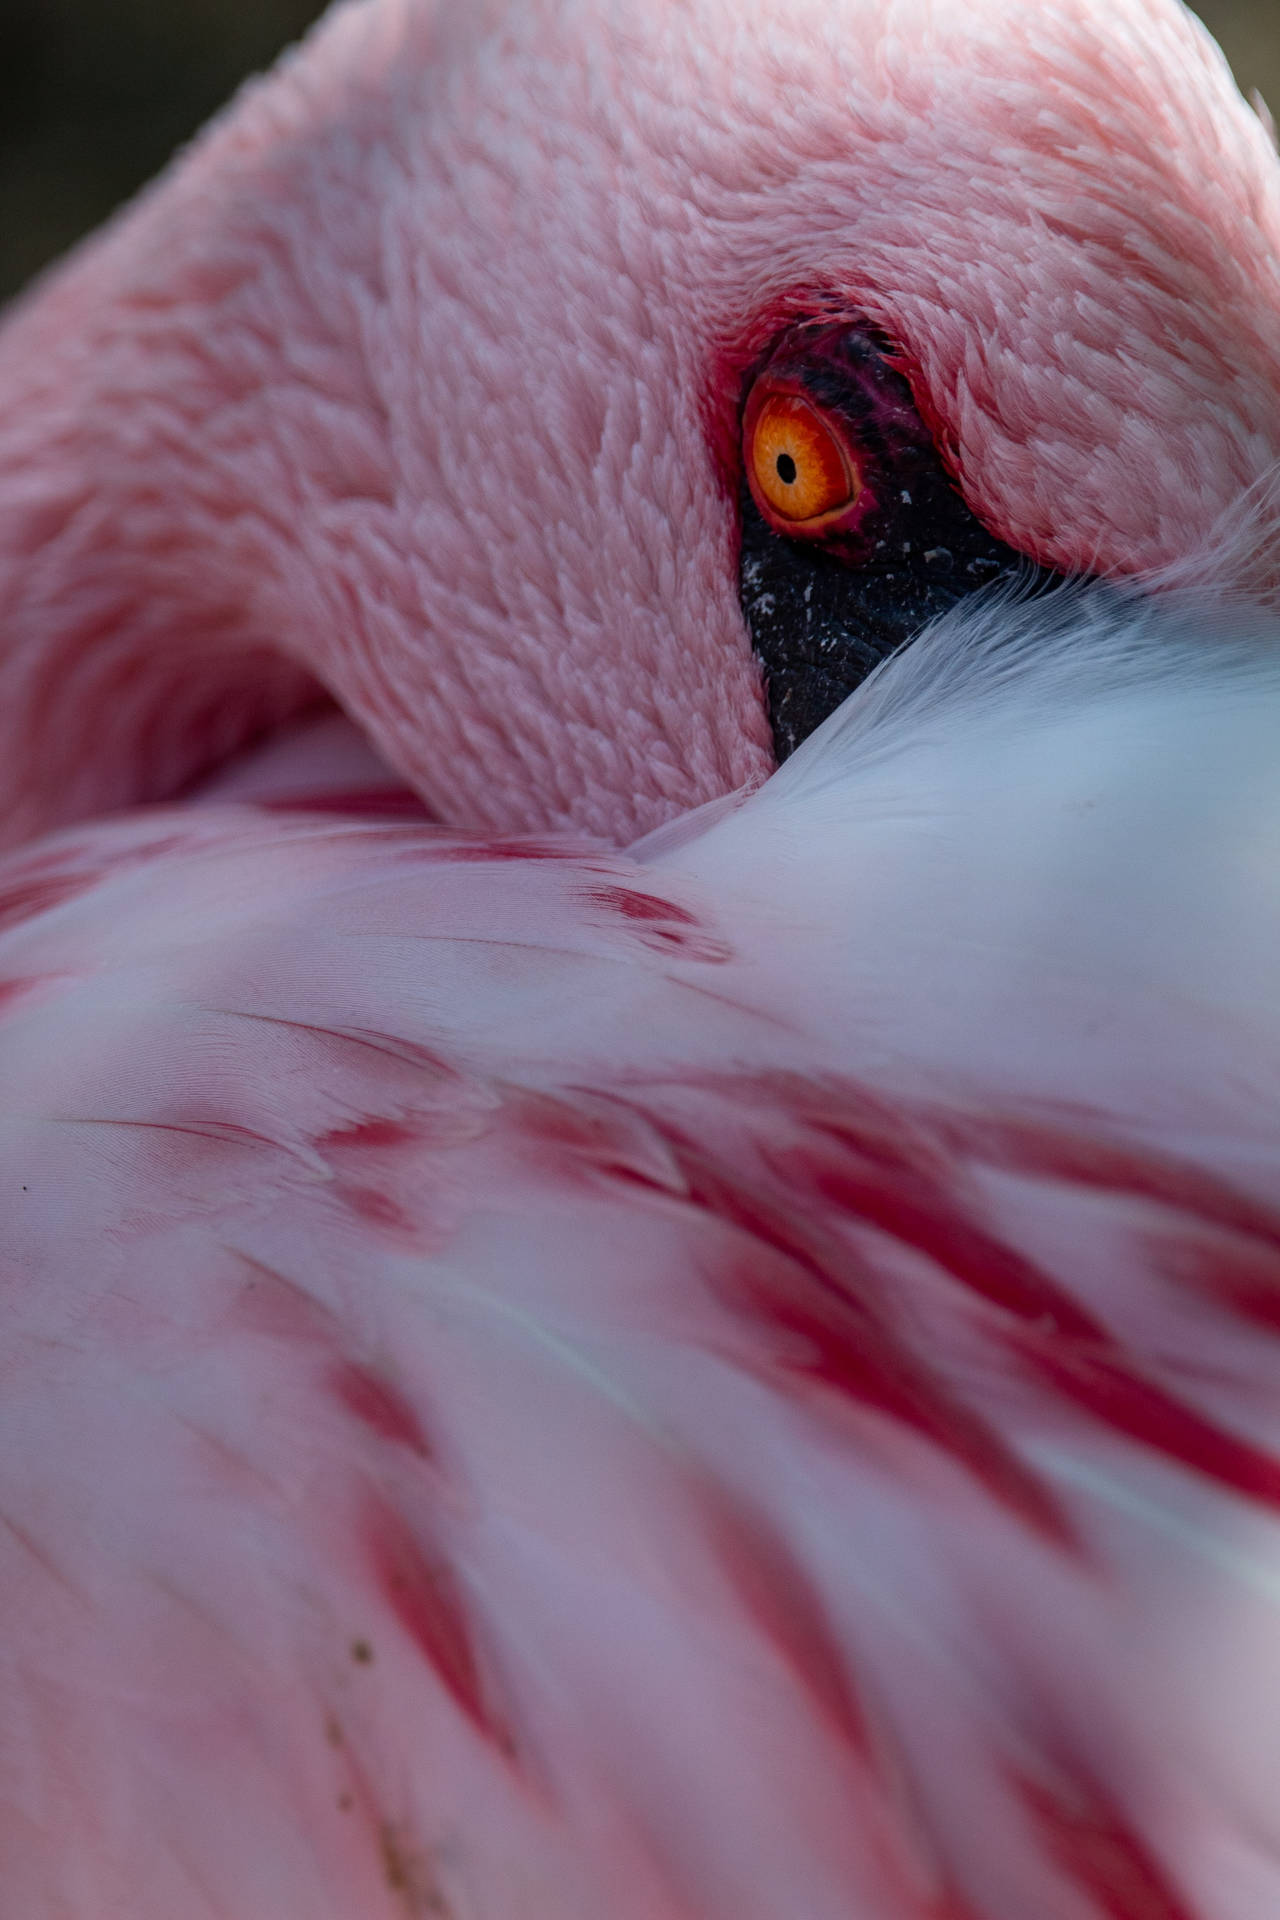 Pink Flamingo Staring Intensely Wallpaper